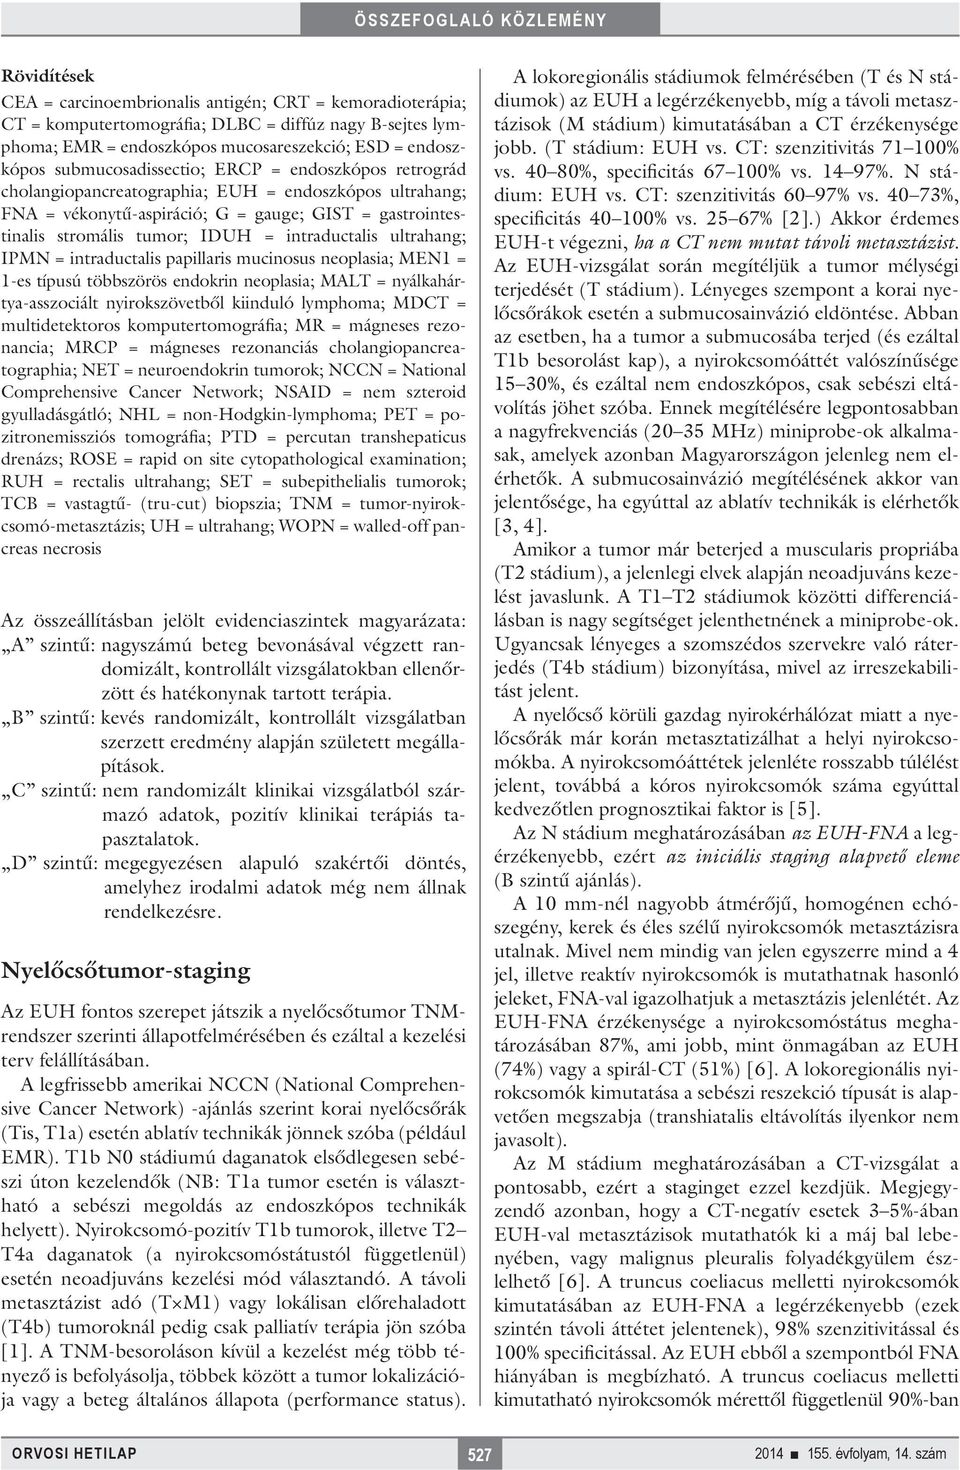 intraductalis ultrahang; IPMN = intraductalis papillaris mucinosus neoplasia; MEN1 = 1-es típusú többszörös endokrin neoplasia; MALT = nyálkahártya-asszociált nyirokszövetből kiinduló lymphoma; MDCT